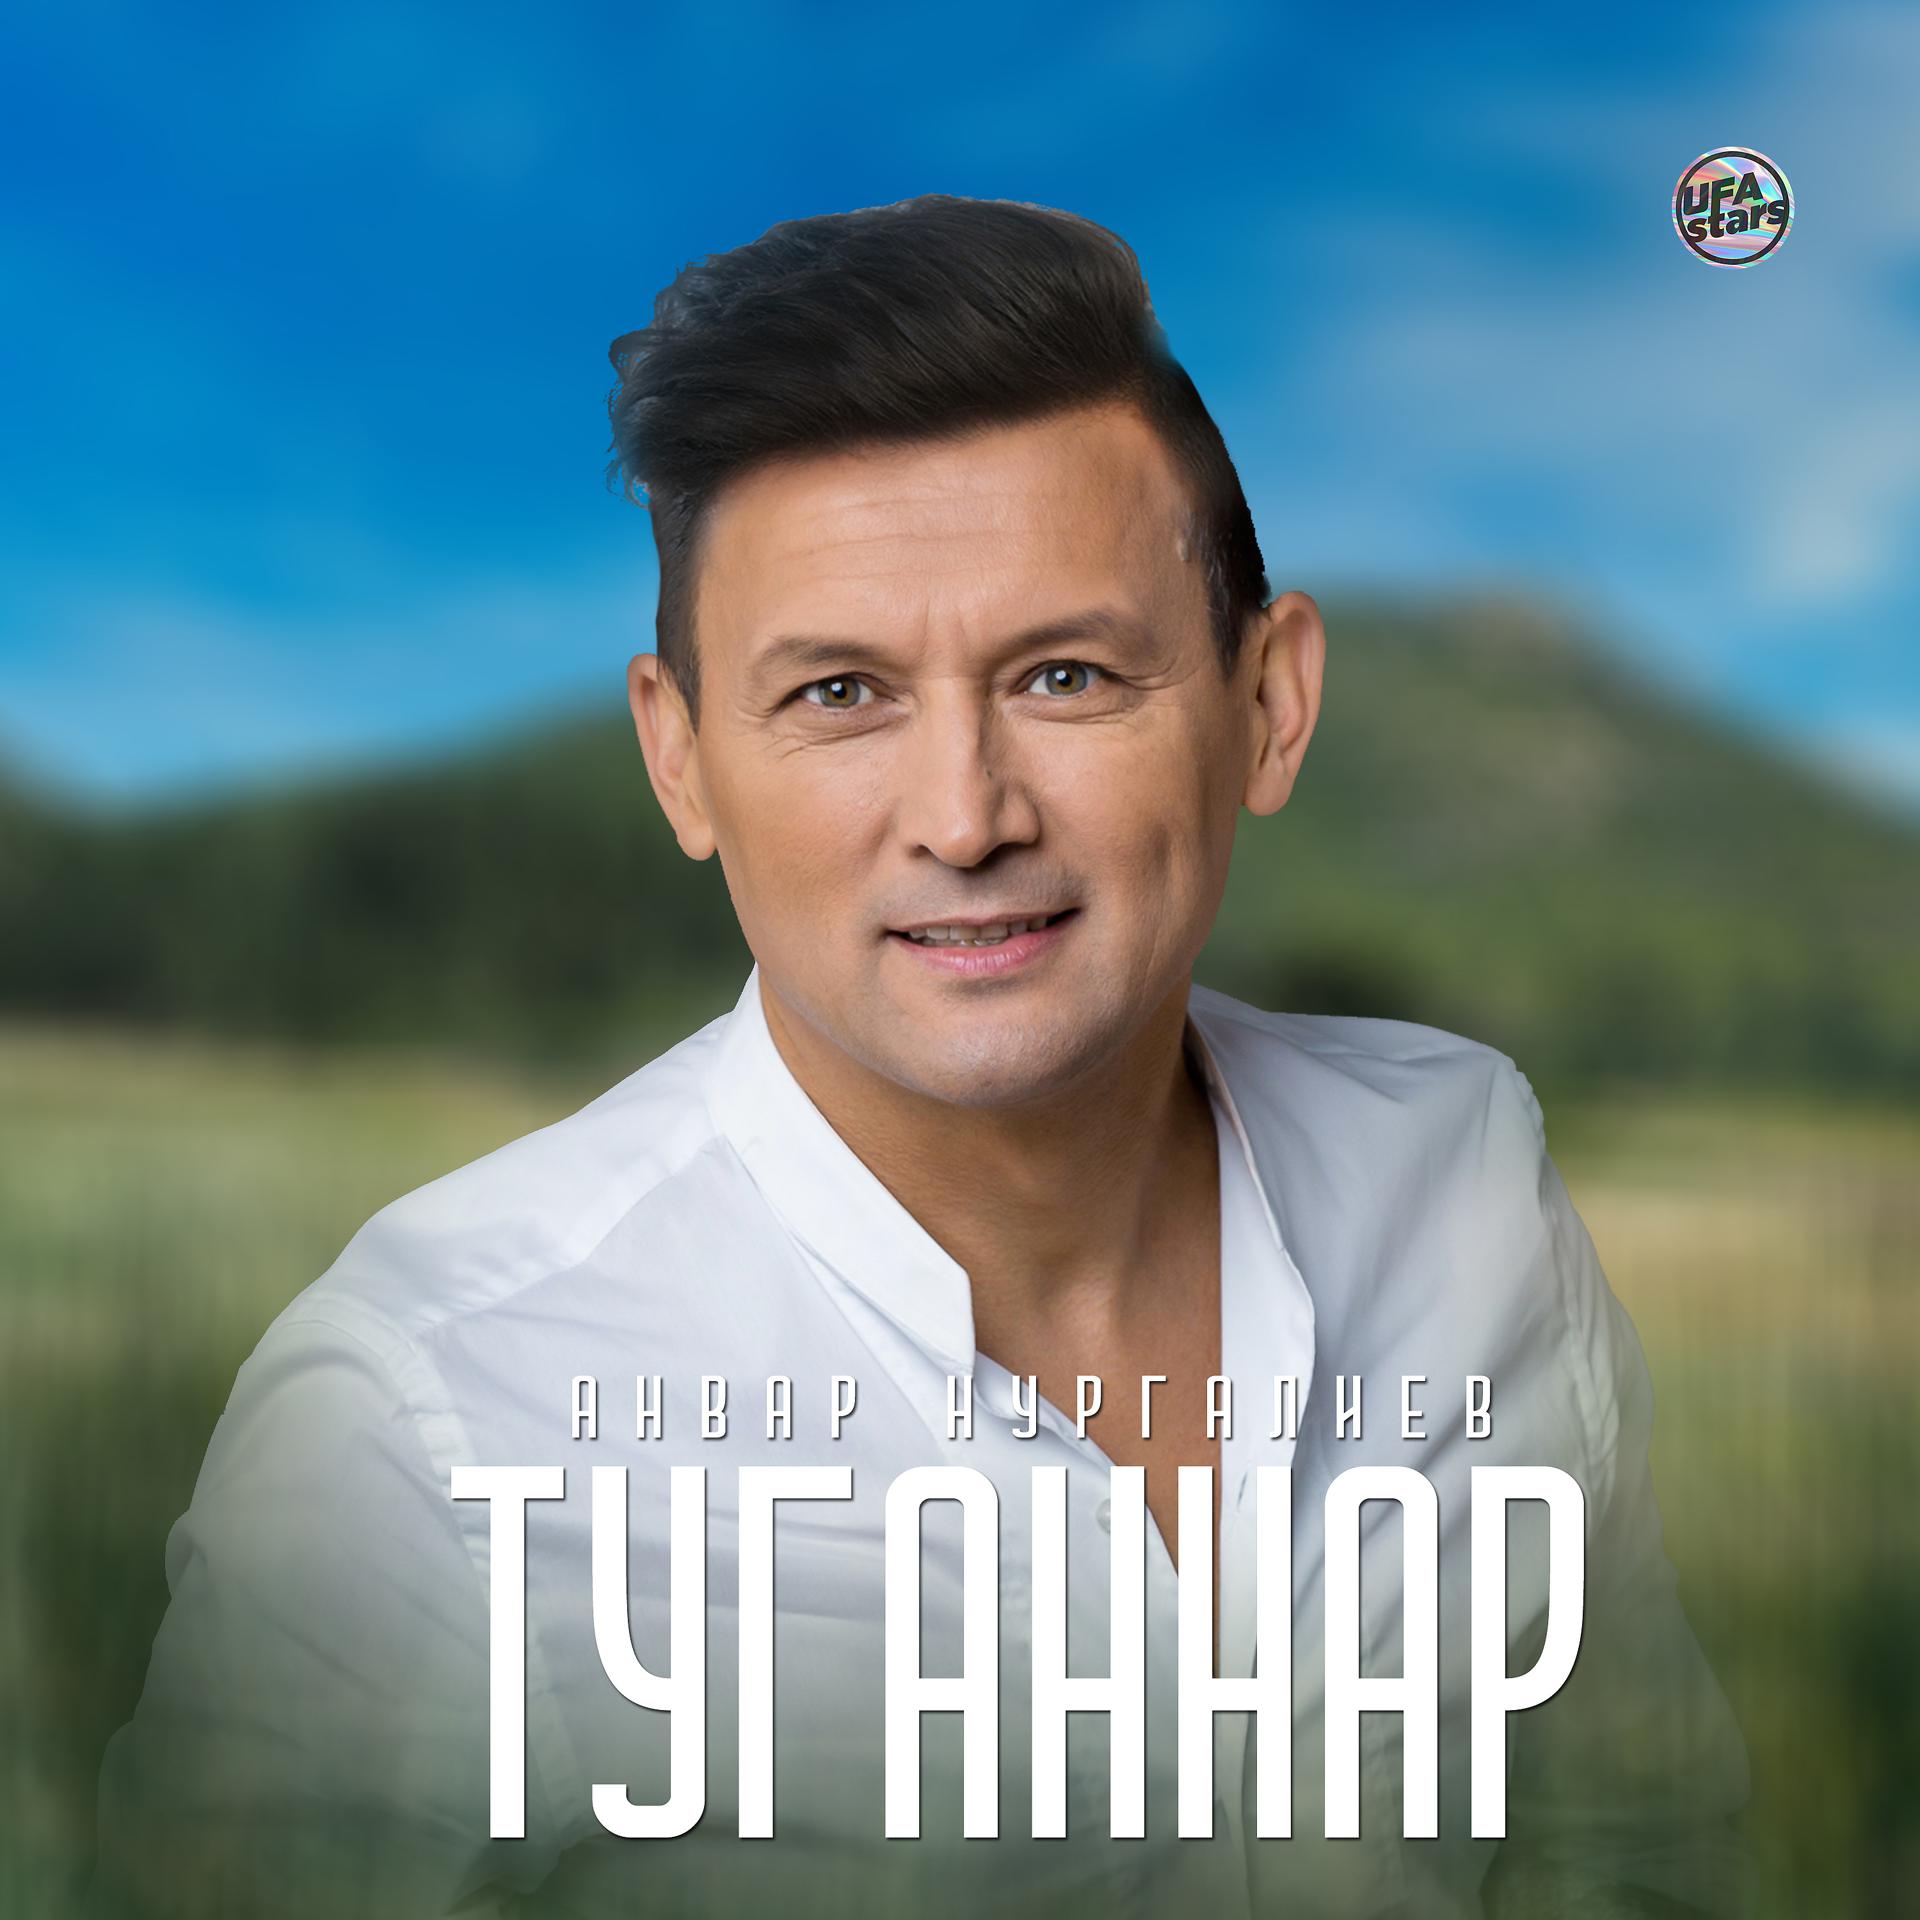 Постер альбома Туганнар